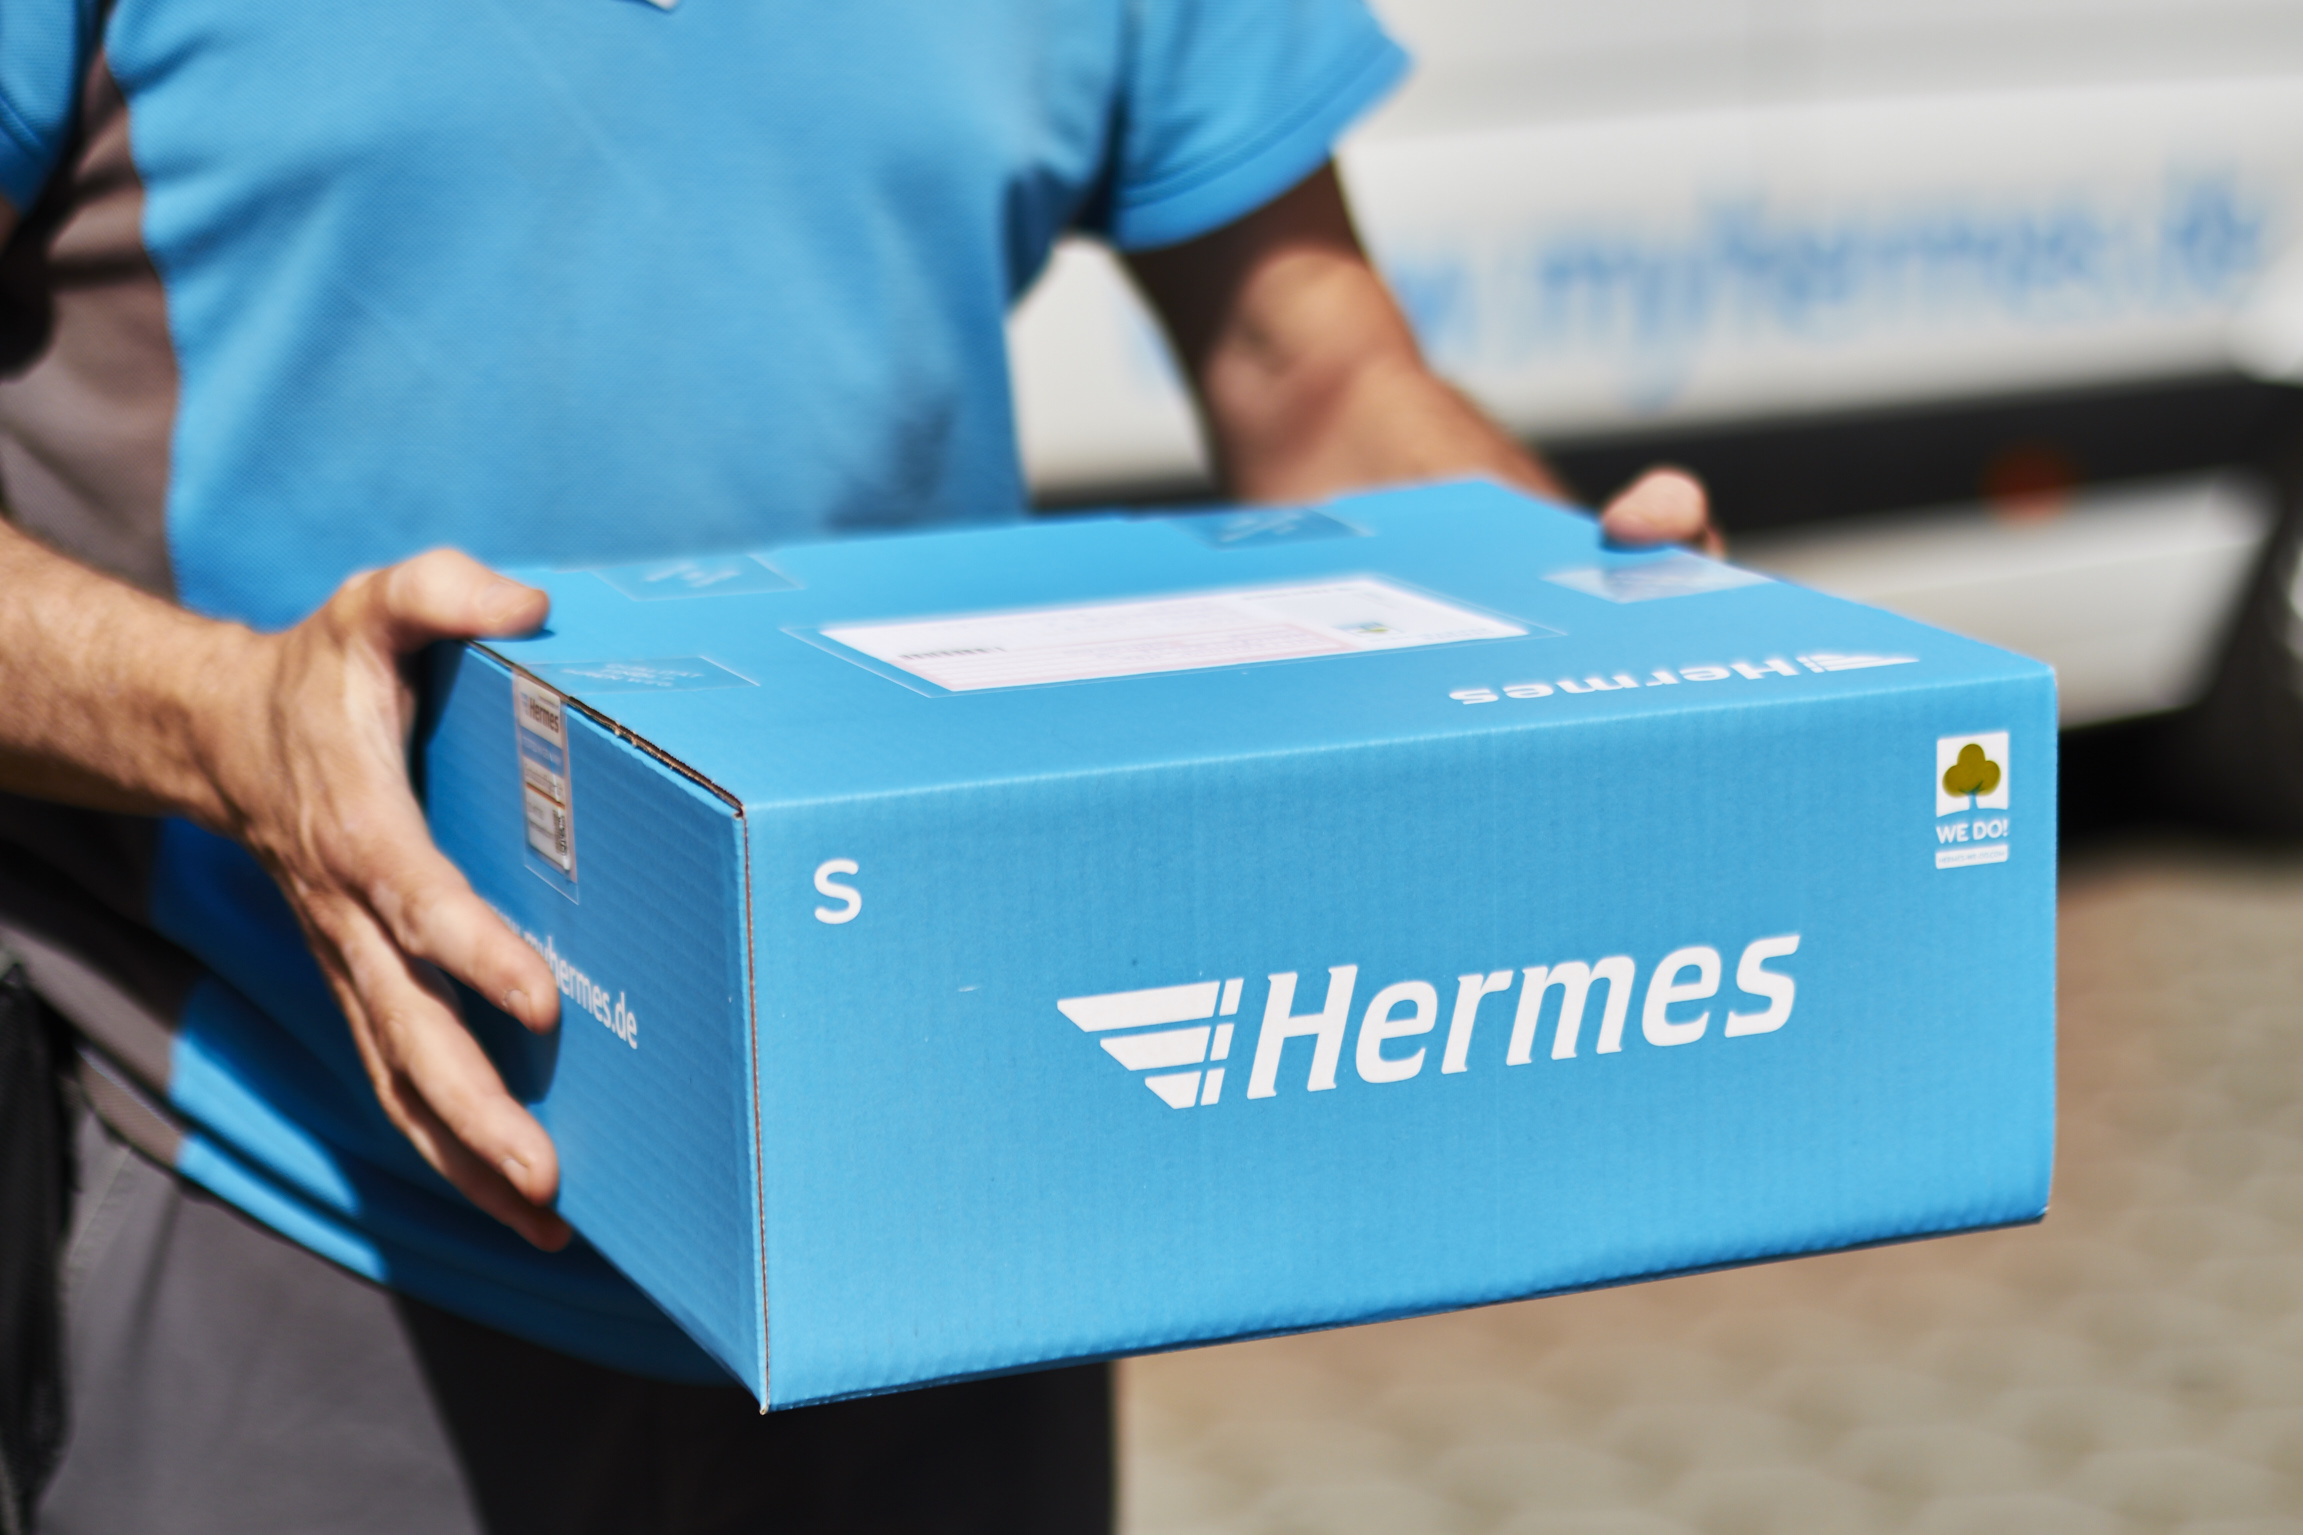 Weitergabe der Mehrwertsteuersenkung: Hermes senkt Preise für privaten